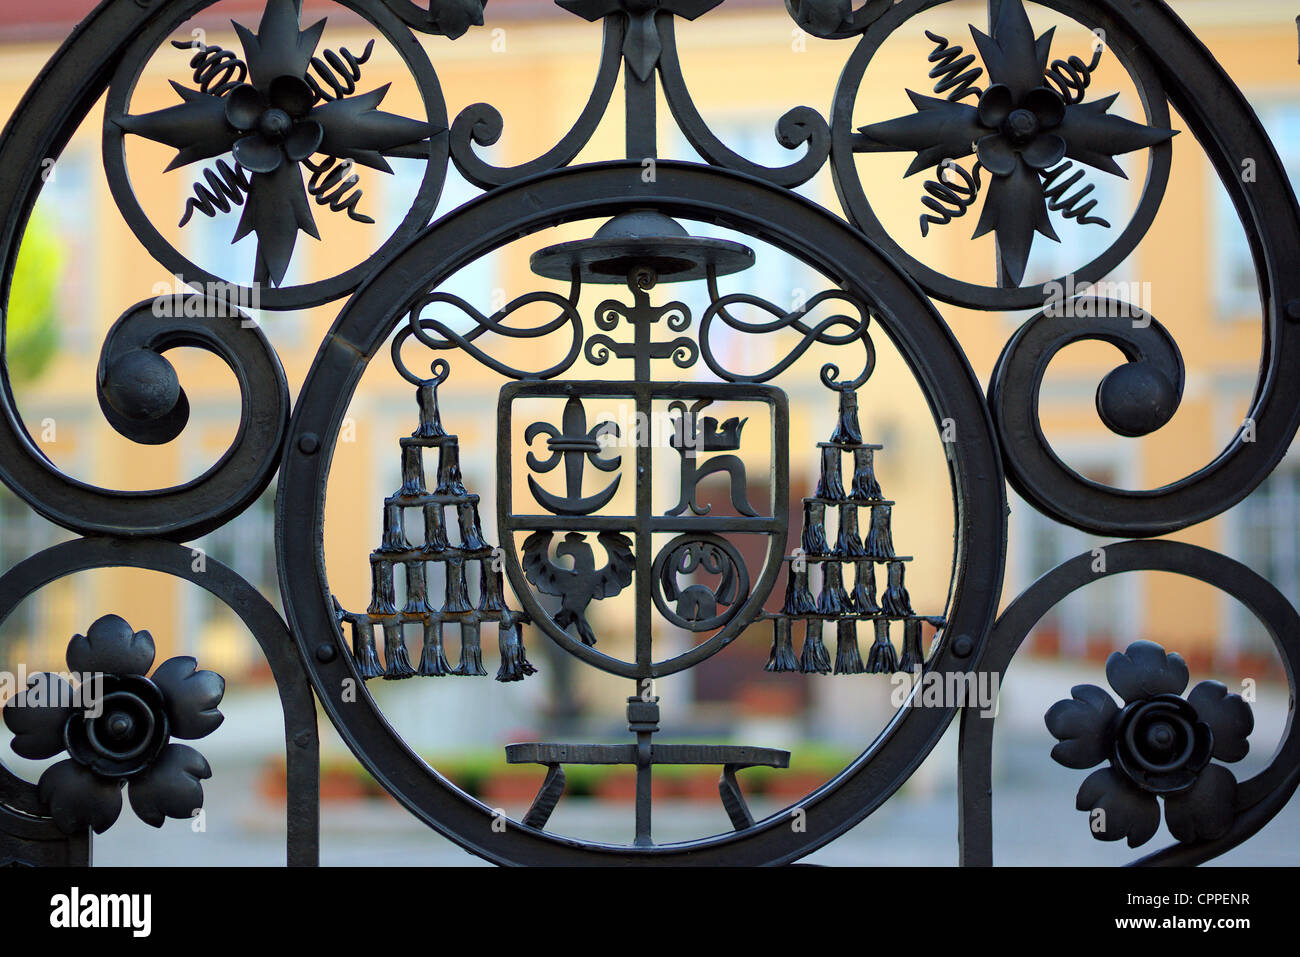 Detalles sobre el portón de hierro del arzobispo s residencia Ostrow Tumski Wroclaw Foto de stock